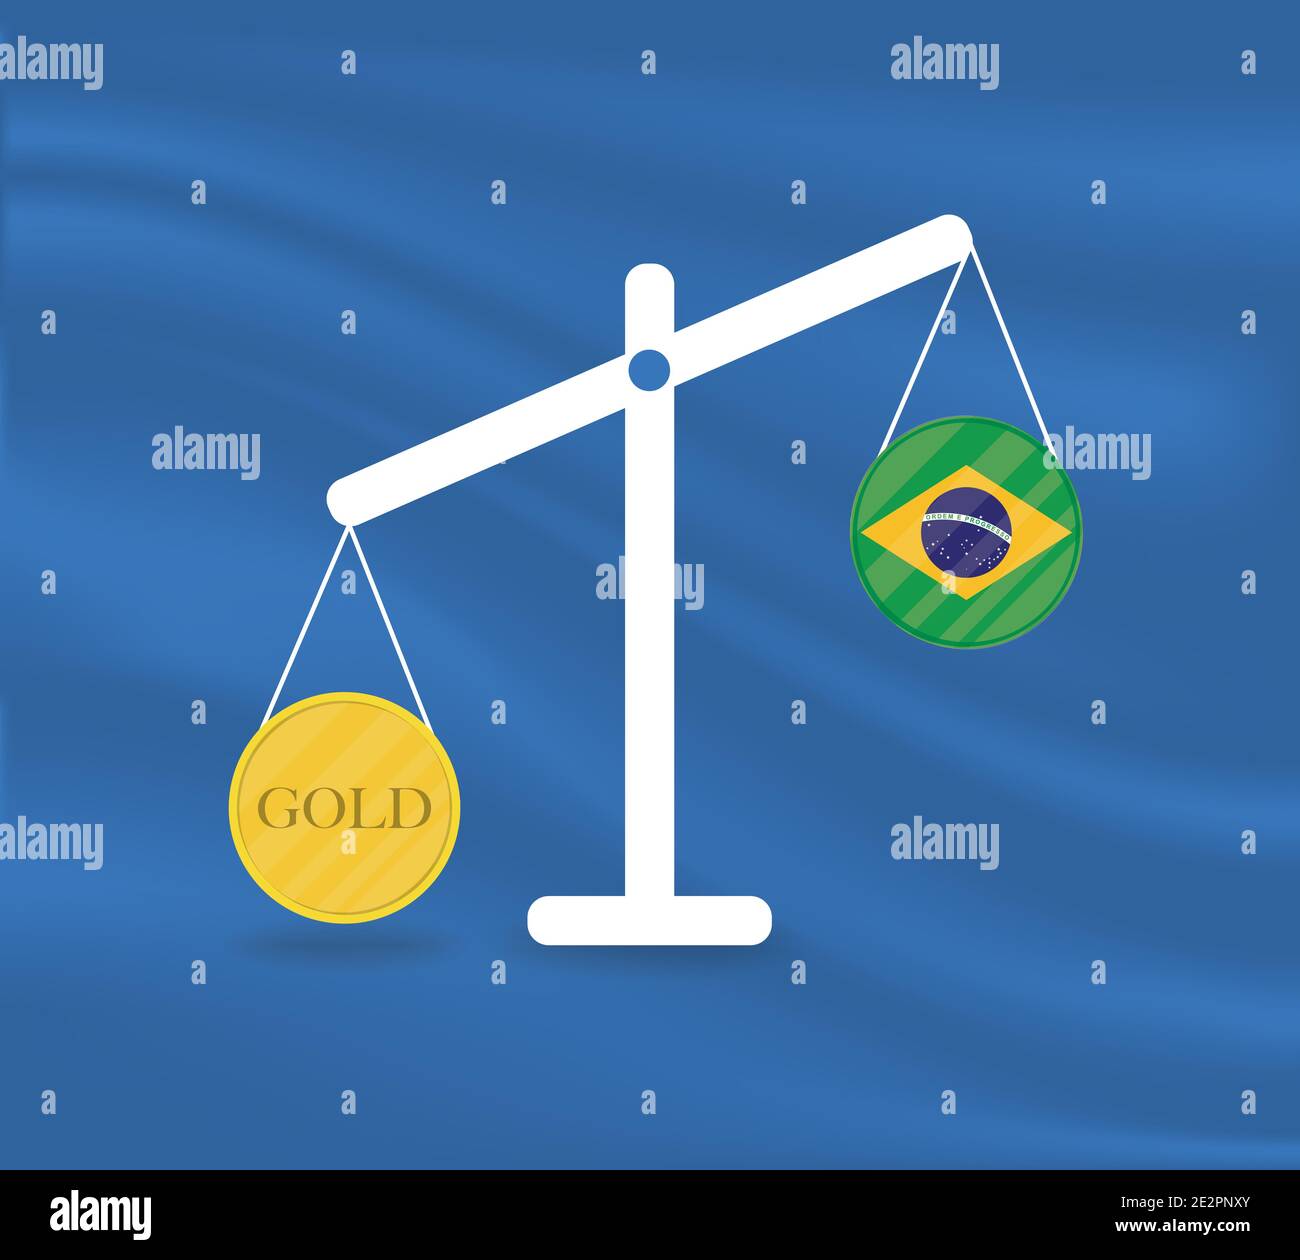 Valuta oro giallo rotondo sulla Bilancia e i saldi economici del paese del  Brasile. L'oro è in aumento, il valore valutario del paese è in diminuzione  Immagine e Vettoriale - Alamy